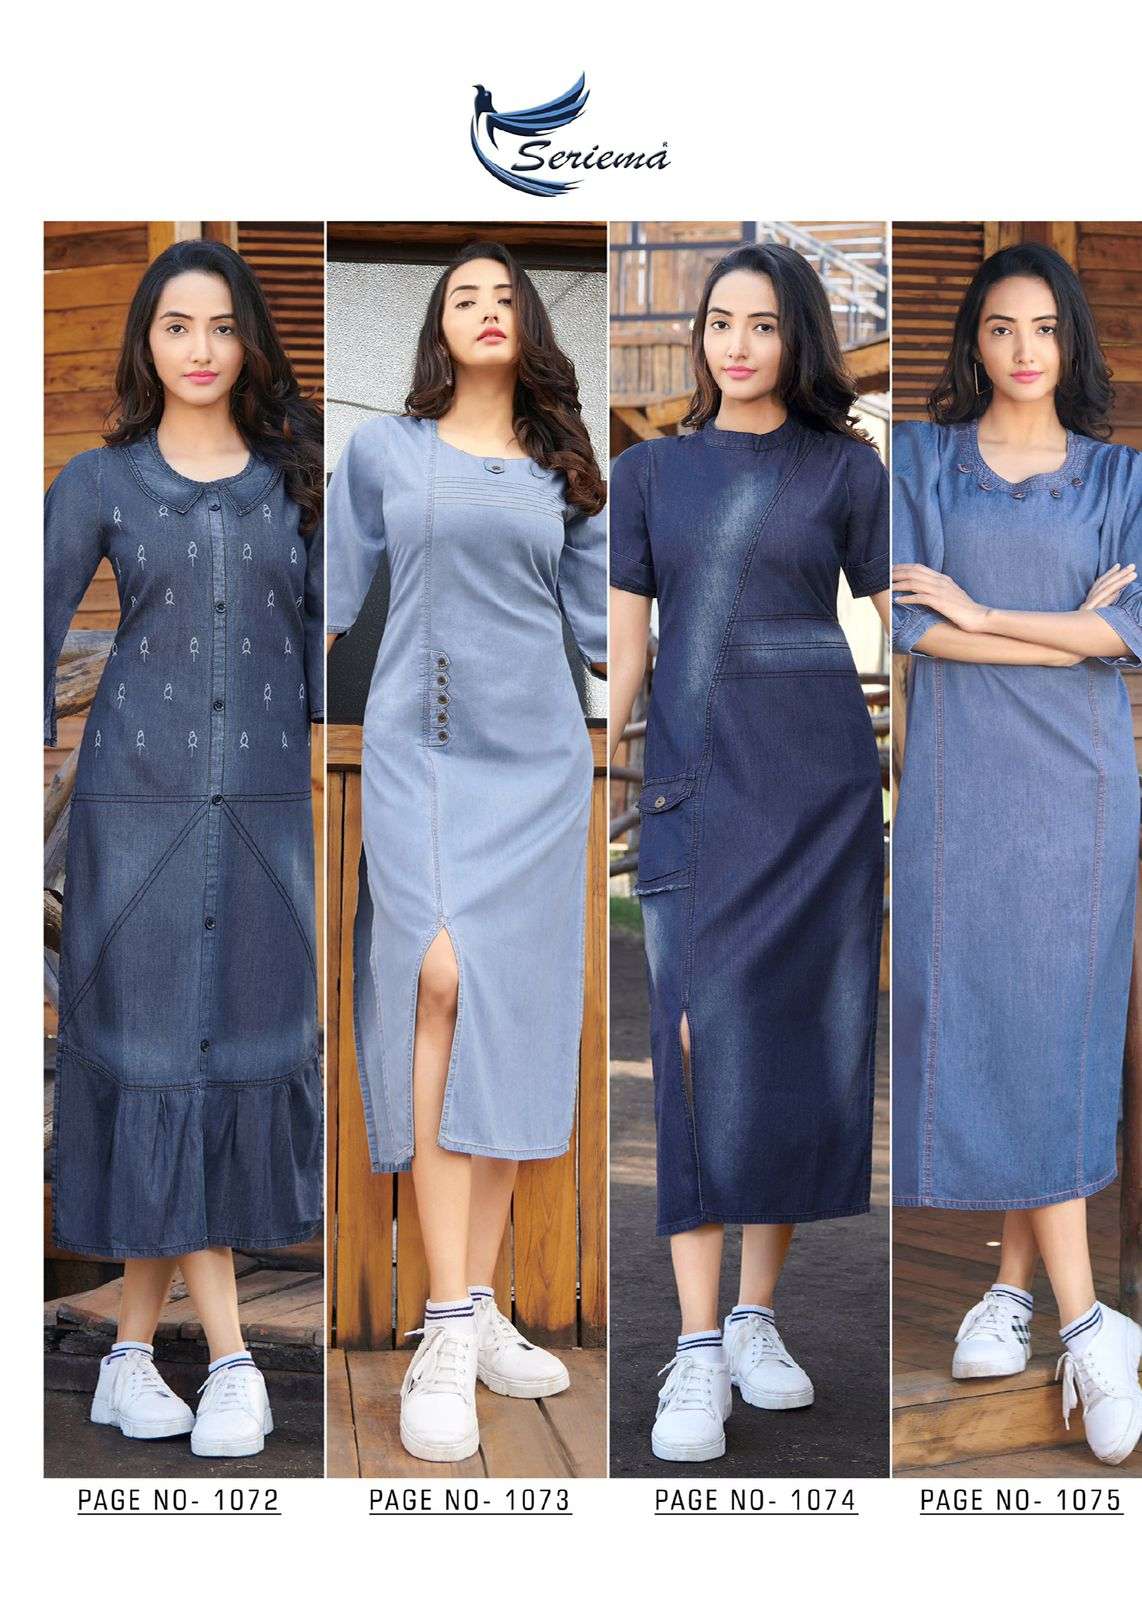 seriema by kumb classy 1068 - 1075 designer cotton denim stylish long kurti pattern online shopping surat 